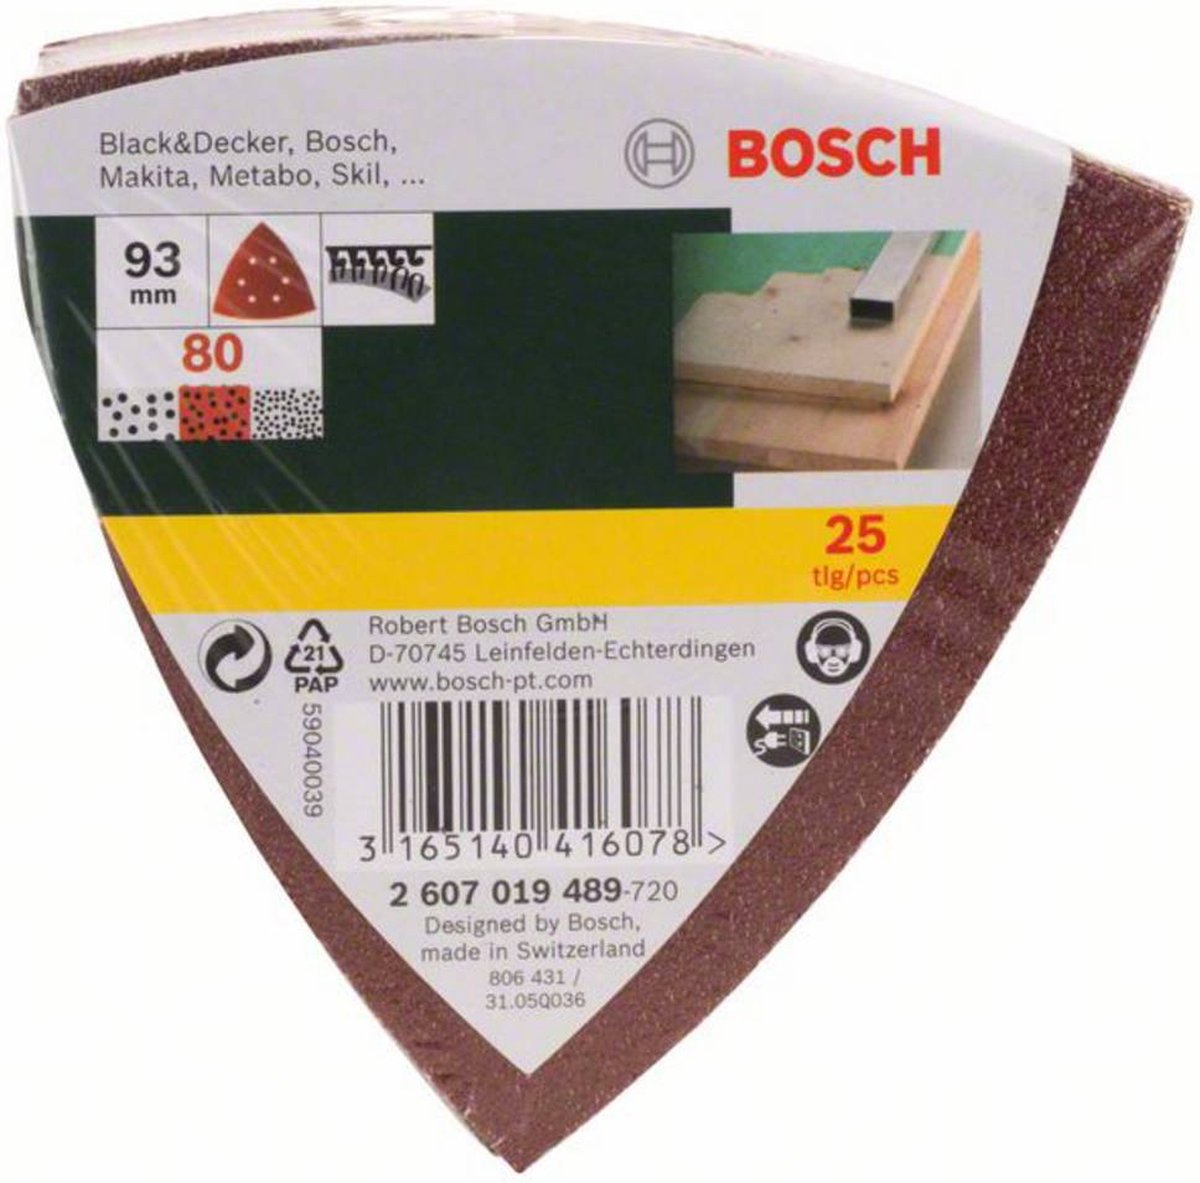 Bosch 25-delige schuurbladenset voor deltaschuurmachines - korrel 80 - Bosch